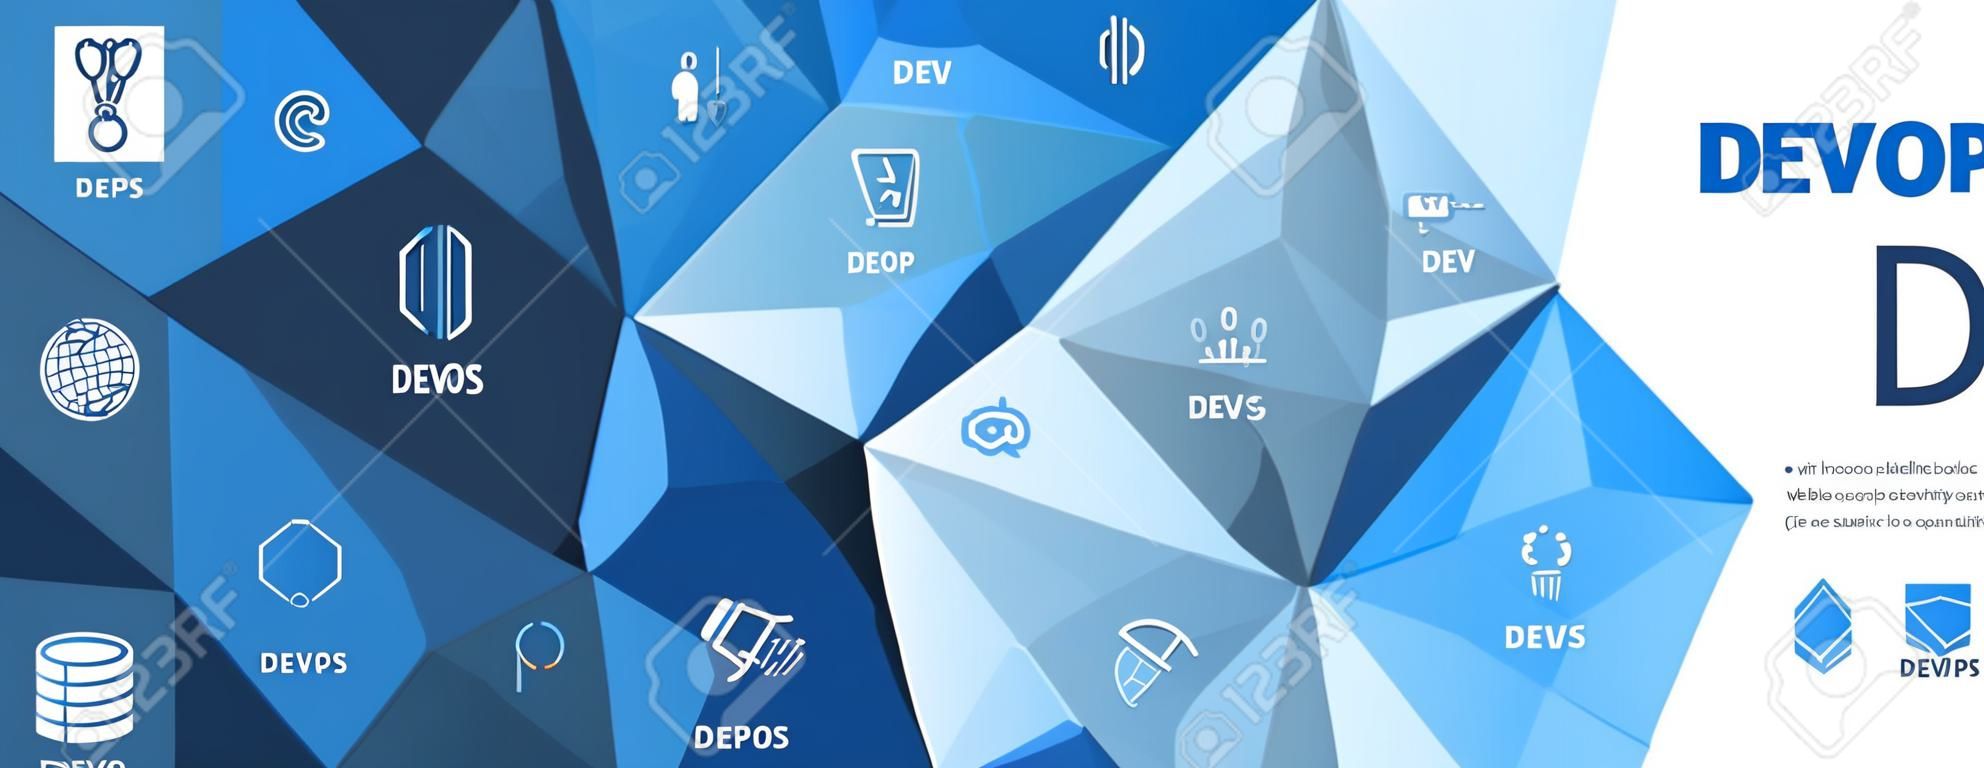 DevOps Icon Set w Dev Ops Web Header Banner